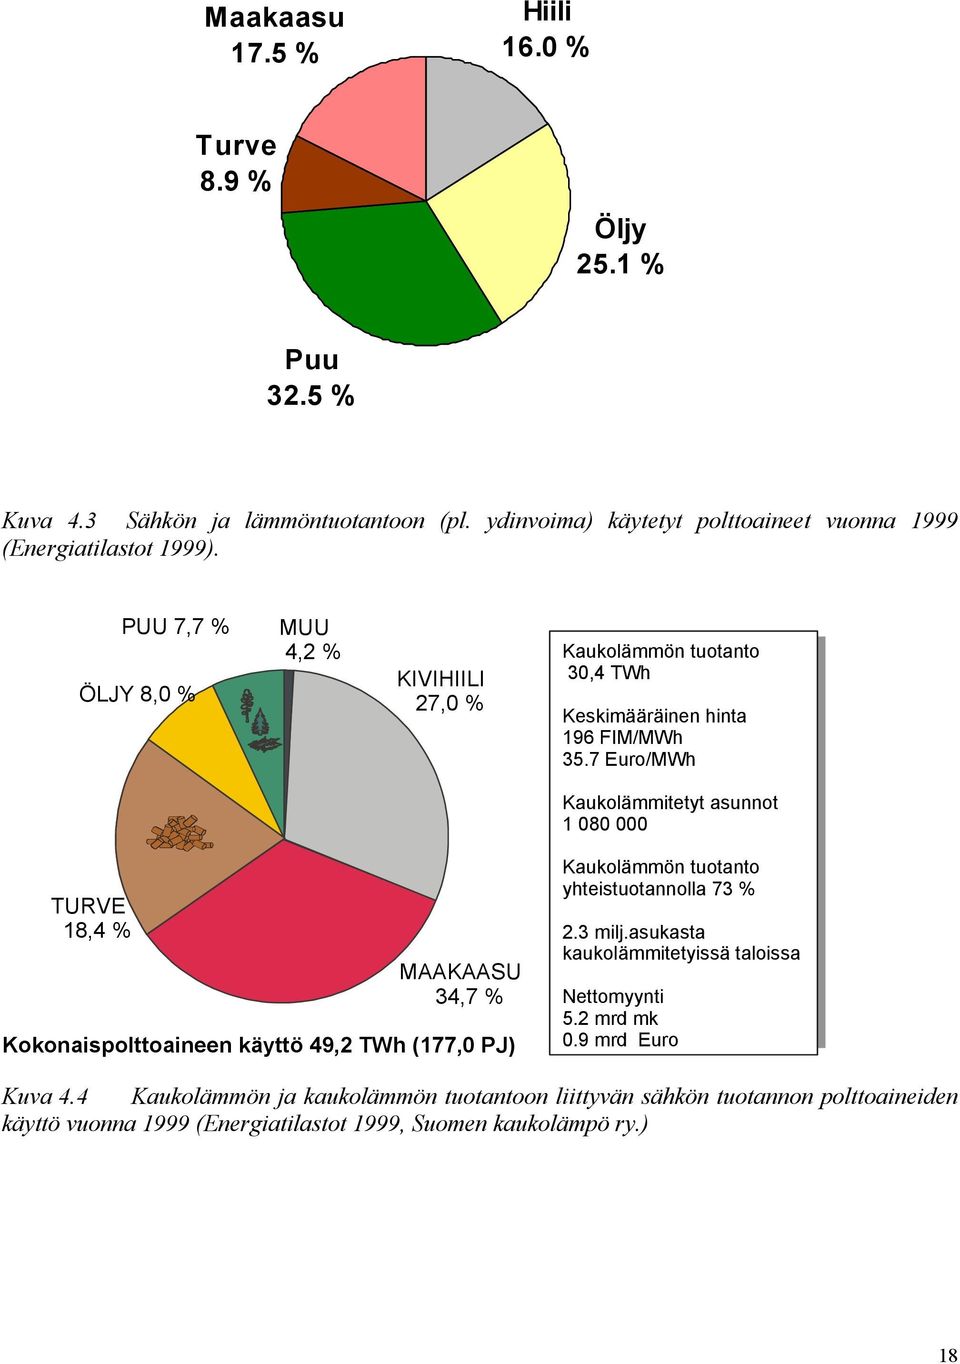 7 Euro/MWh Kaukolämmitetyt asunnot 1 080 000 TURVE 18,4 % MAAKAASU 34,7 % Kokonaispolttoaineen käyttö 49,2 TWh (177,0 PJ) Kaukolämmön tuotanto yhteistuotannolla 73 % 2.